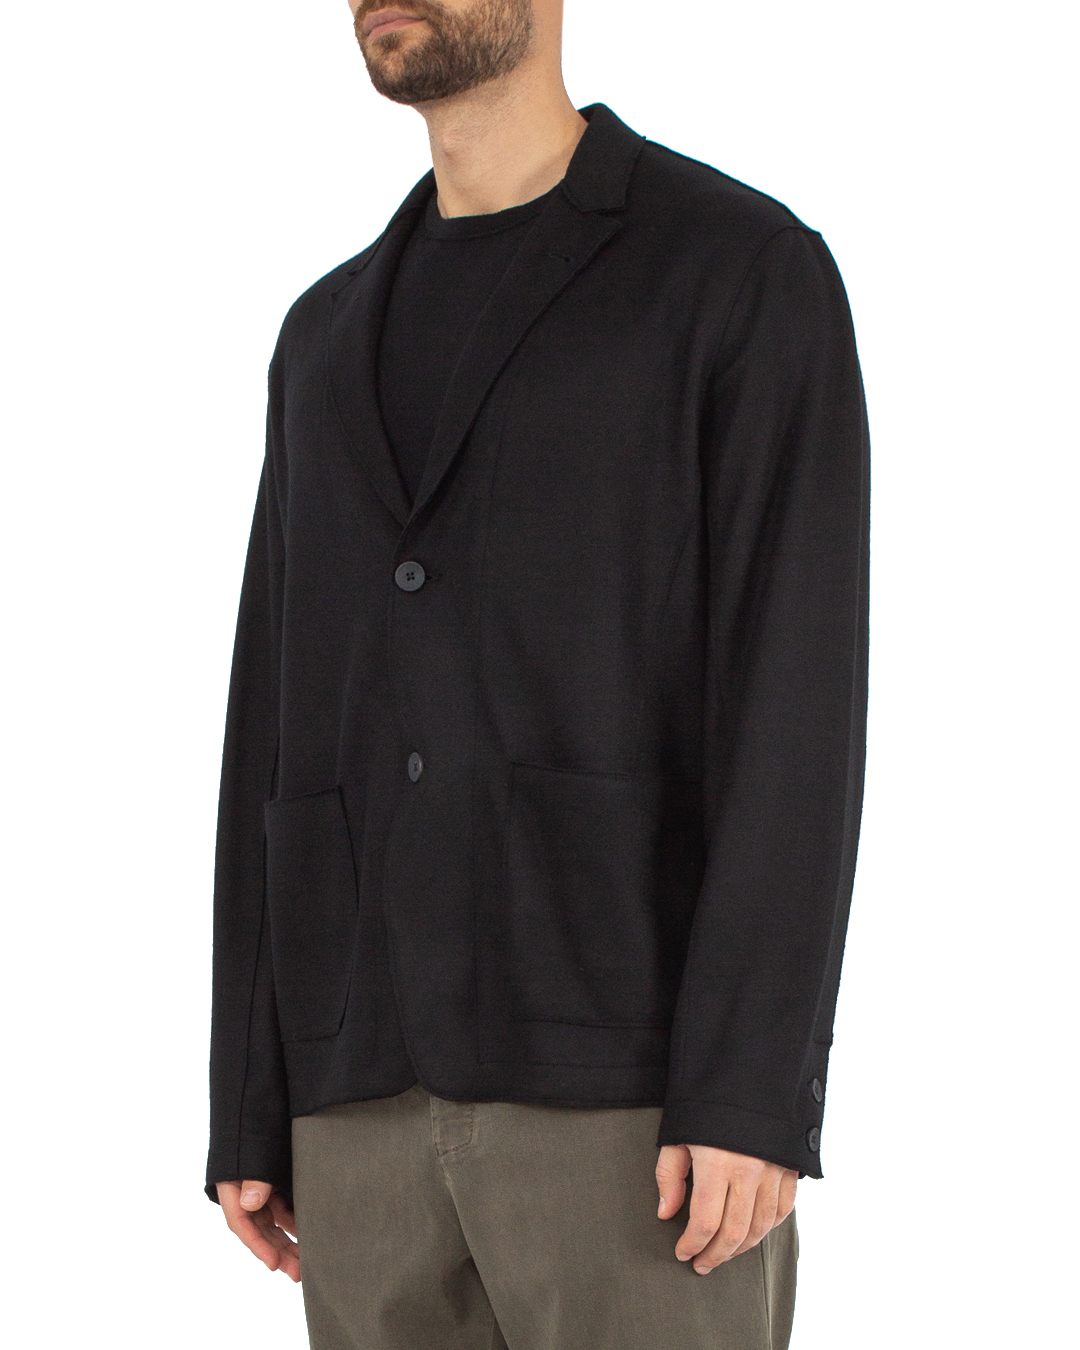 пиджак Transit CFUTRVJ190 черный xl, размер xl - фото 3